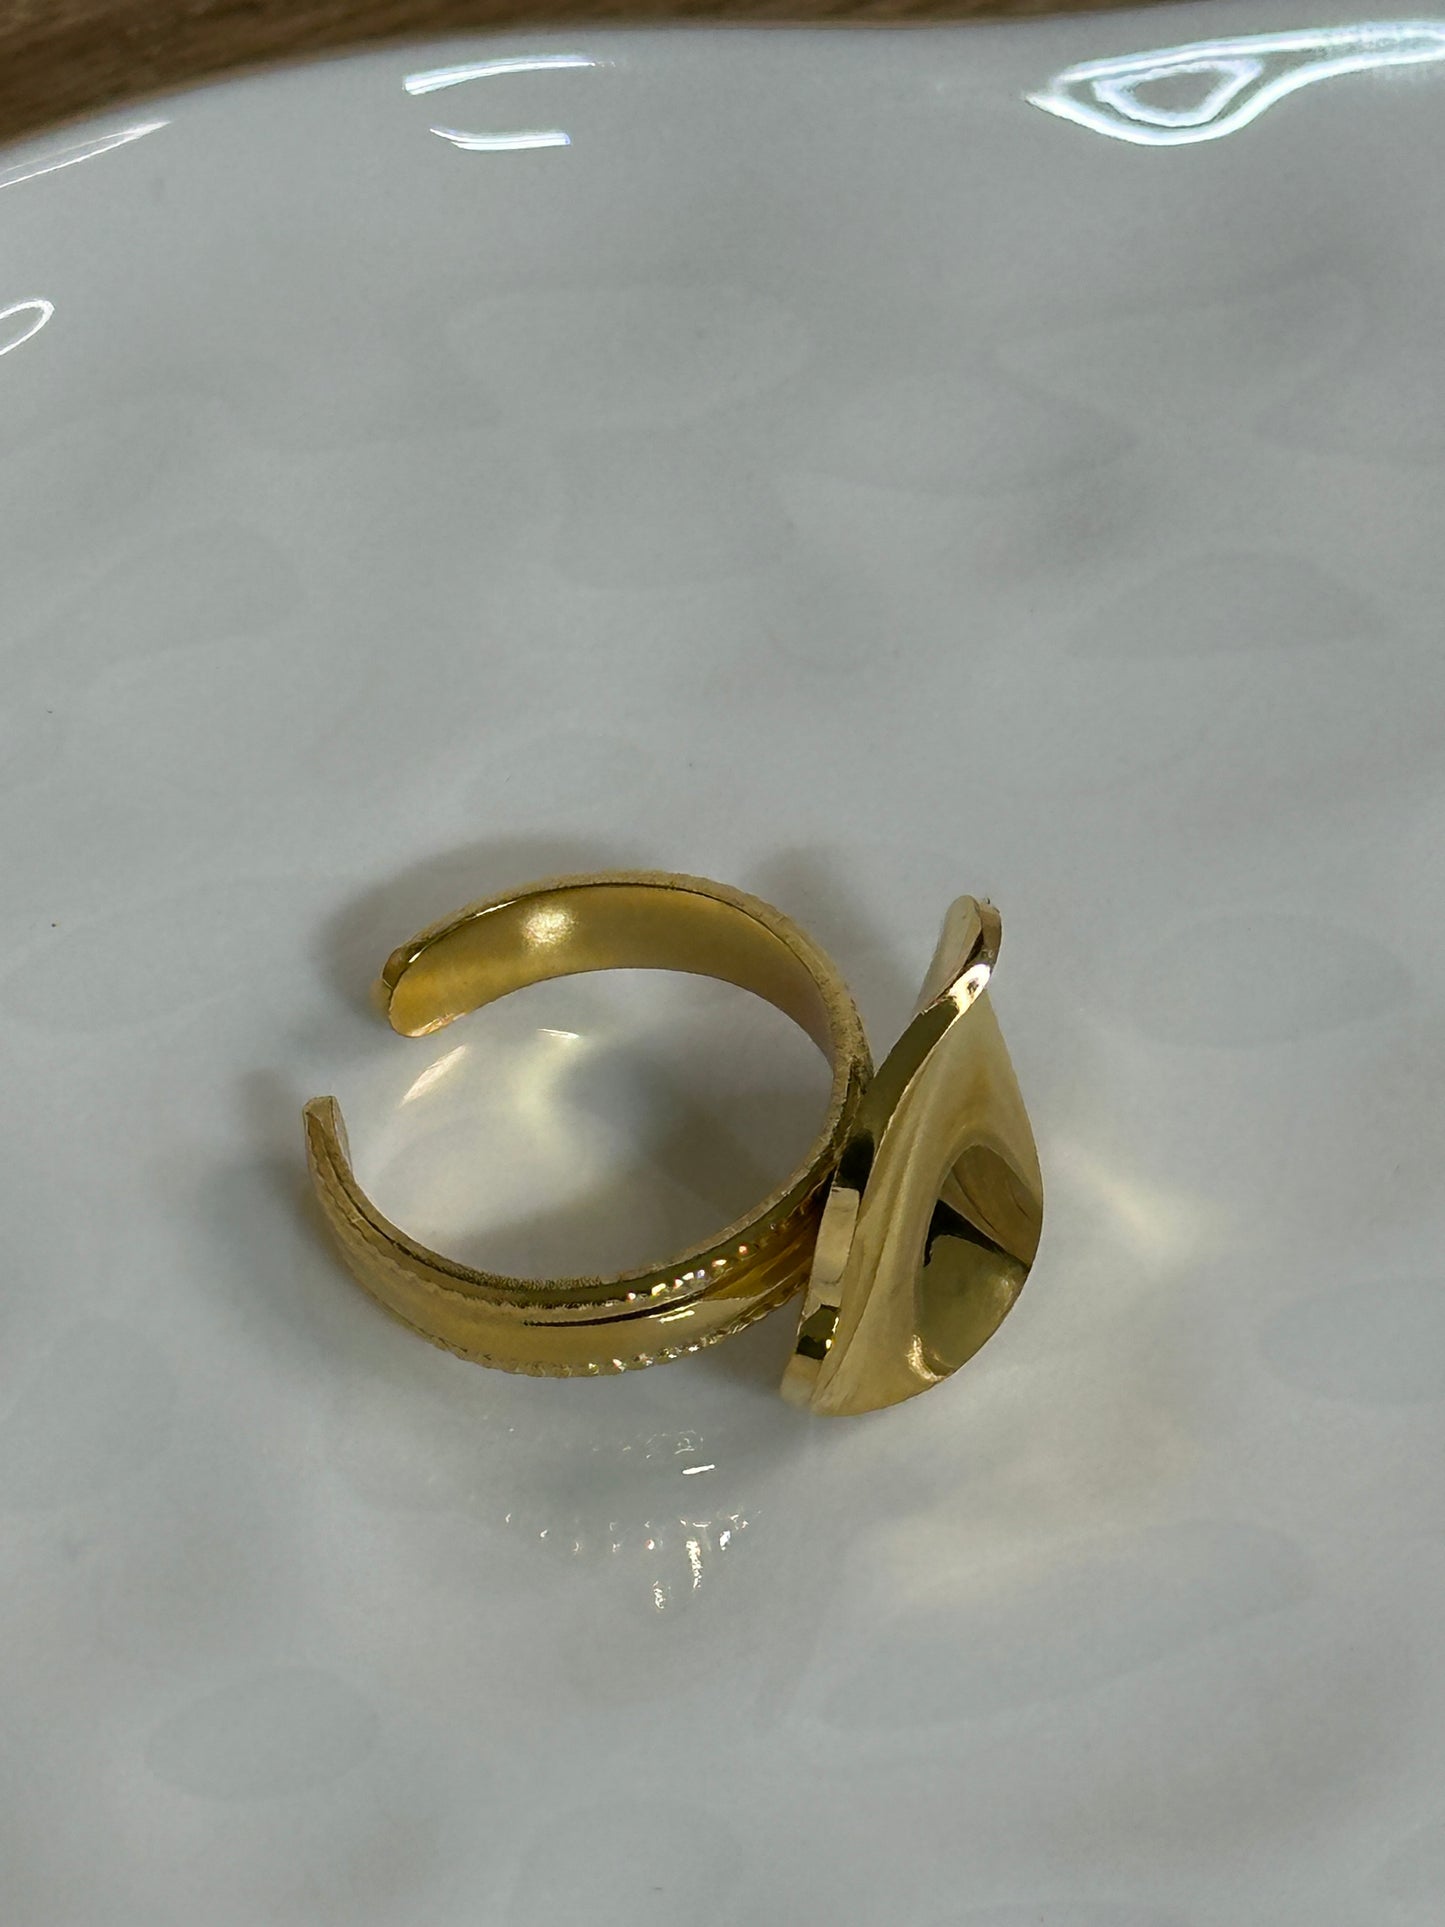 The Secret Ring